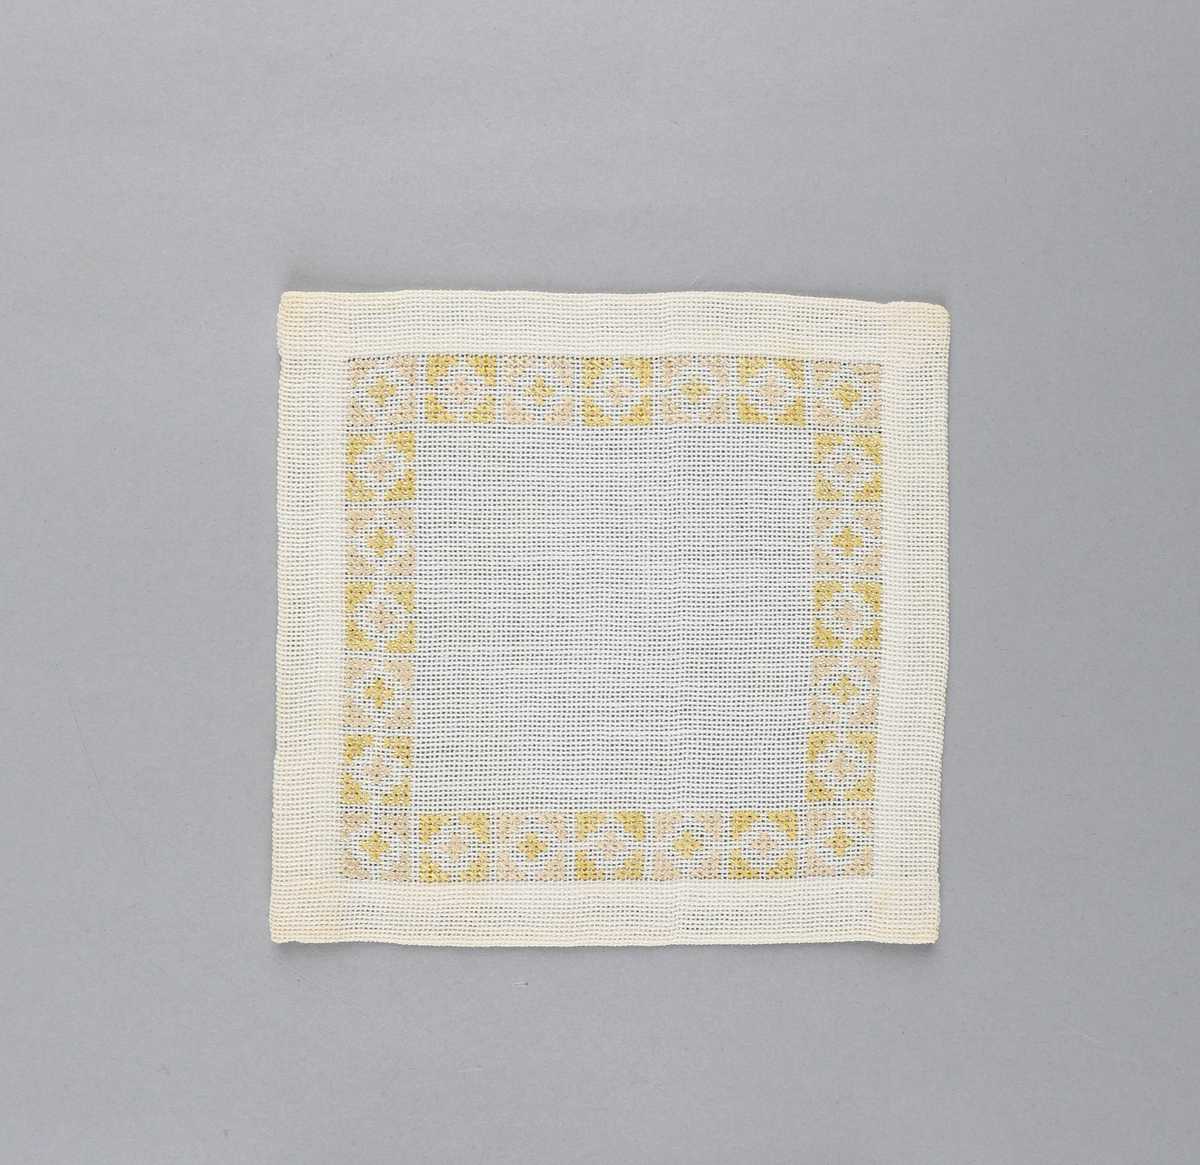 Tilnærmet kvadratisk dekkebrikke i hvitt tekstil med brodert bord langs brettekanten. Broderiet består av korssting av gul og rosa tråd i geometrisk mønster.
